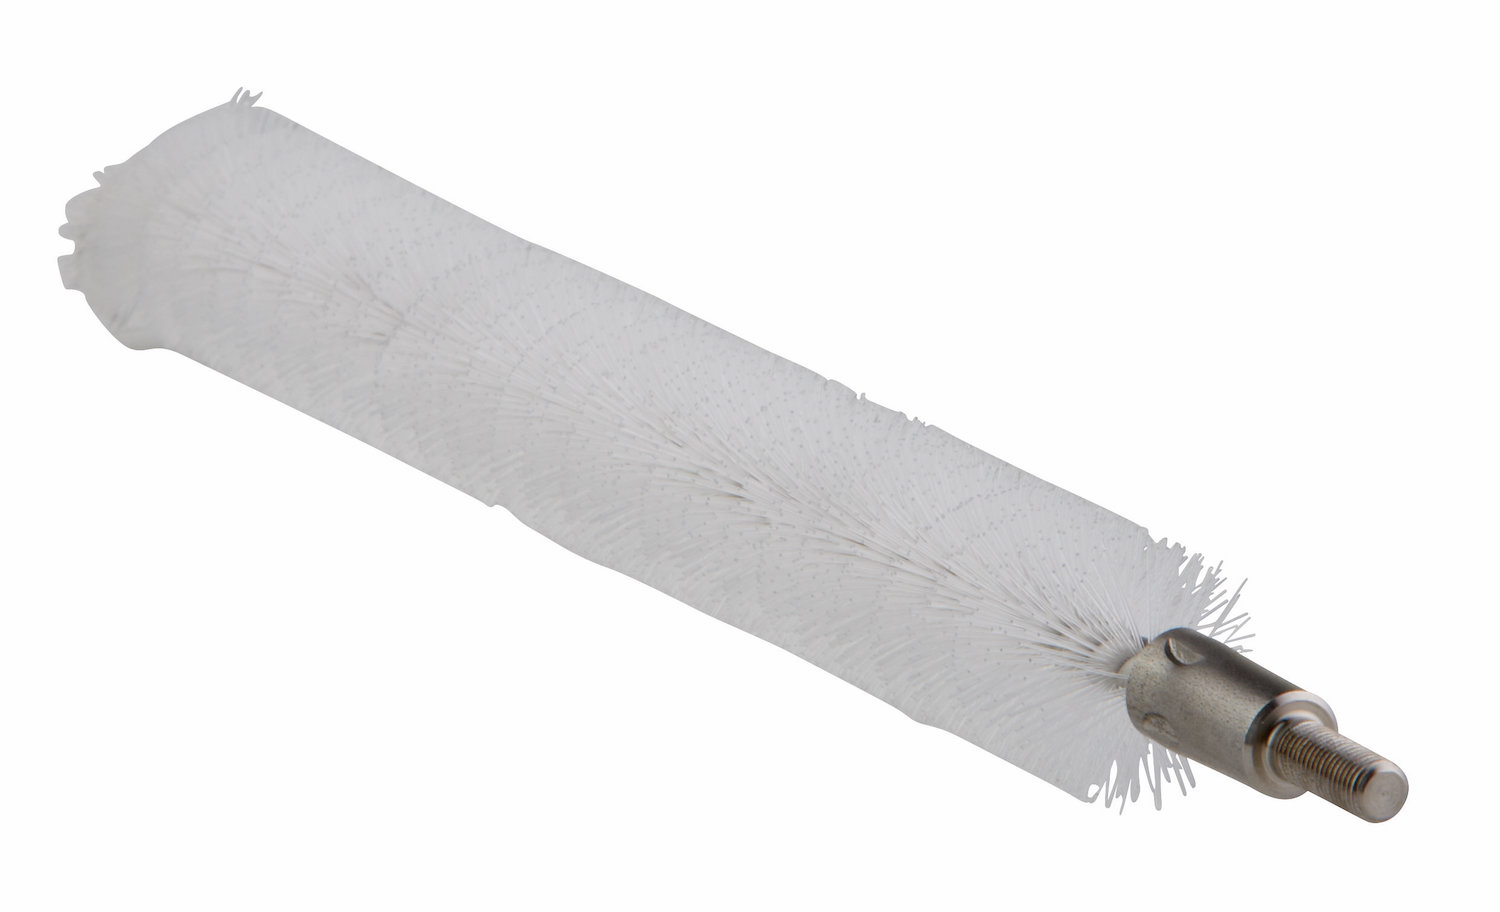 Tube Brush f/flexible handle 53515 or 53525, Ø20 mm, 200 mm, Medium, White